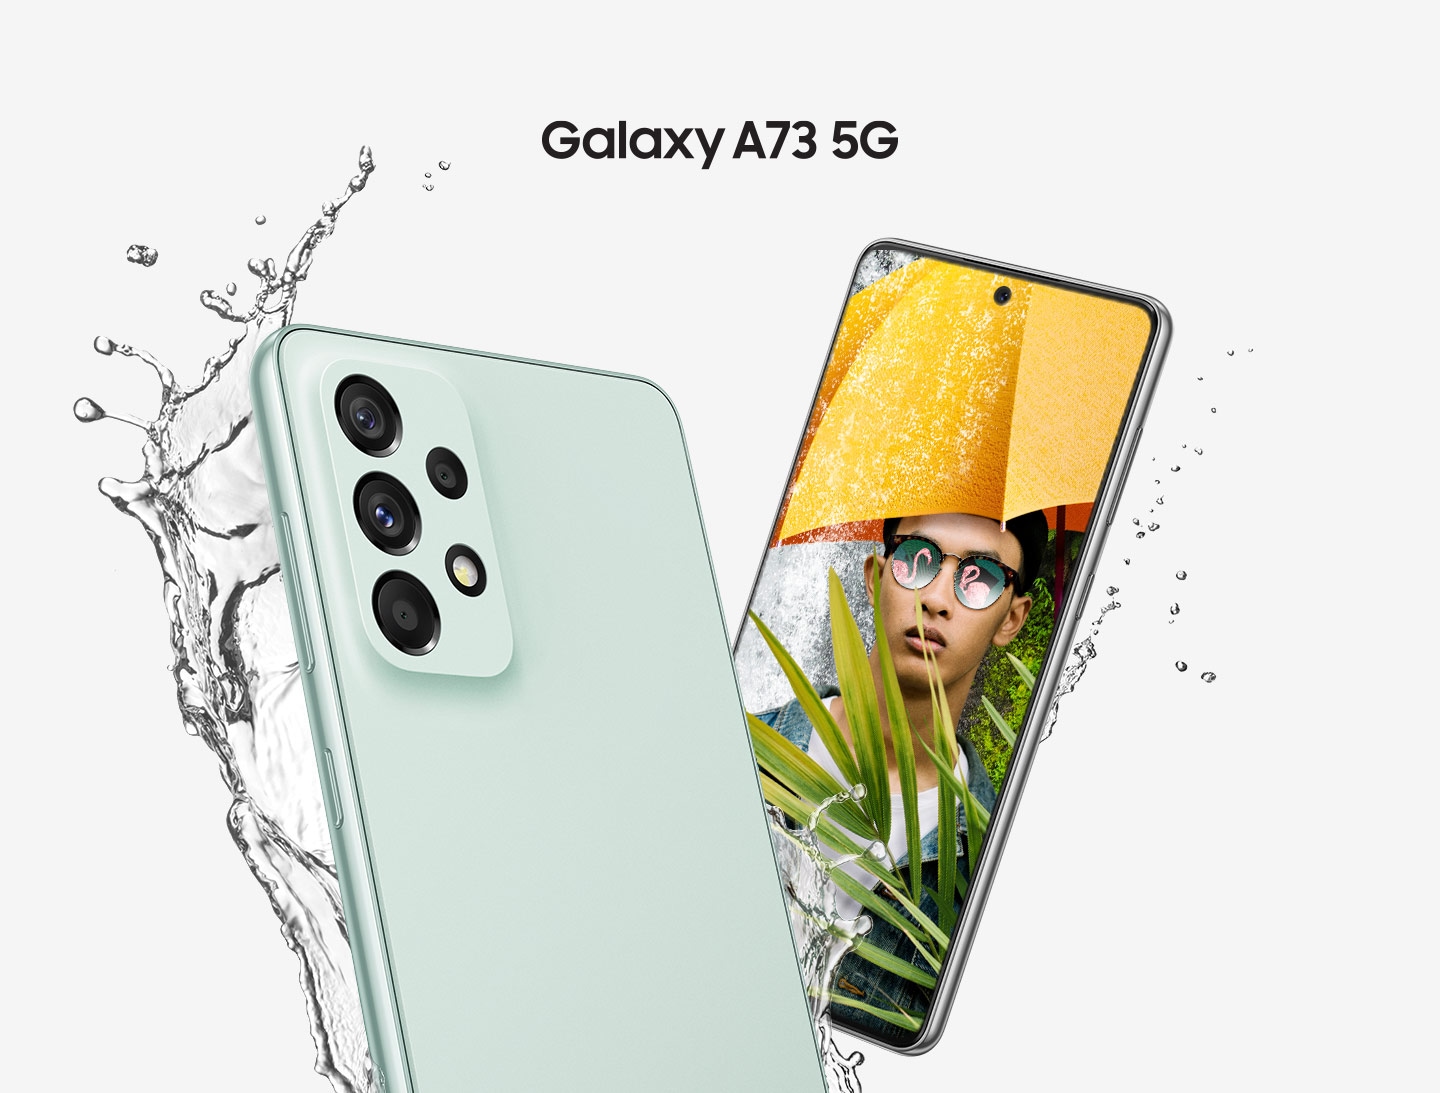 Два устройства Galaxy A73 5G в Awesome Mint показаны с одним устройством, показывающим заднюю часть, а другое - переднюю. Вода разбрызгивается, чтобы показать водонепроницаемость, в то время как переднее спасательное устройство показывает мужчину в желтом зонтике, на котором белым текстом написано Awesome.